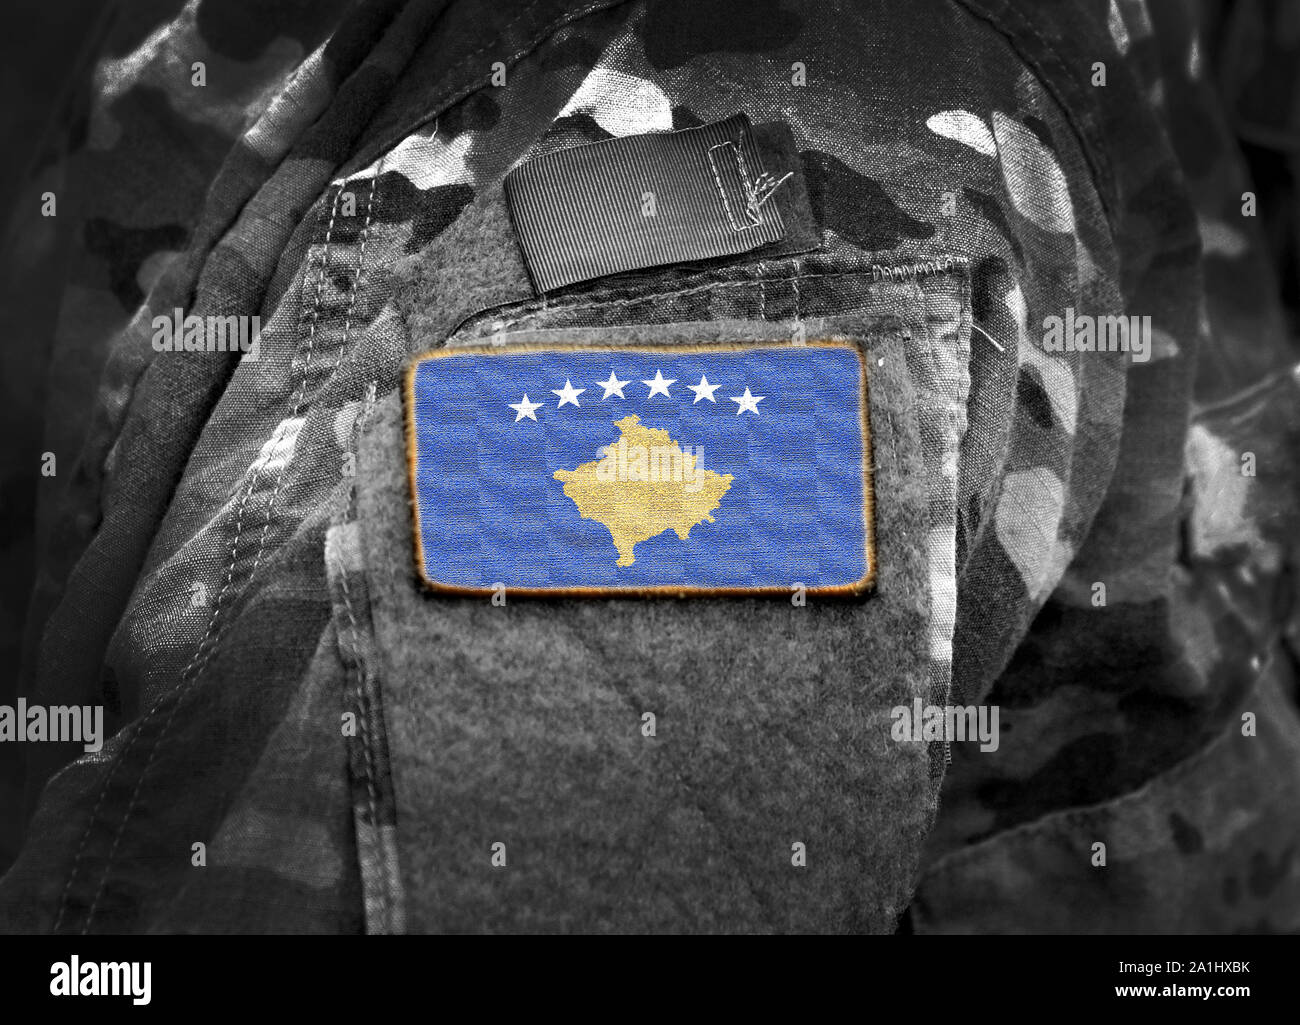 Pavillon du Kosovo sur l'uniforme militaire (collage). Banque D'Images